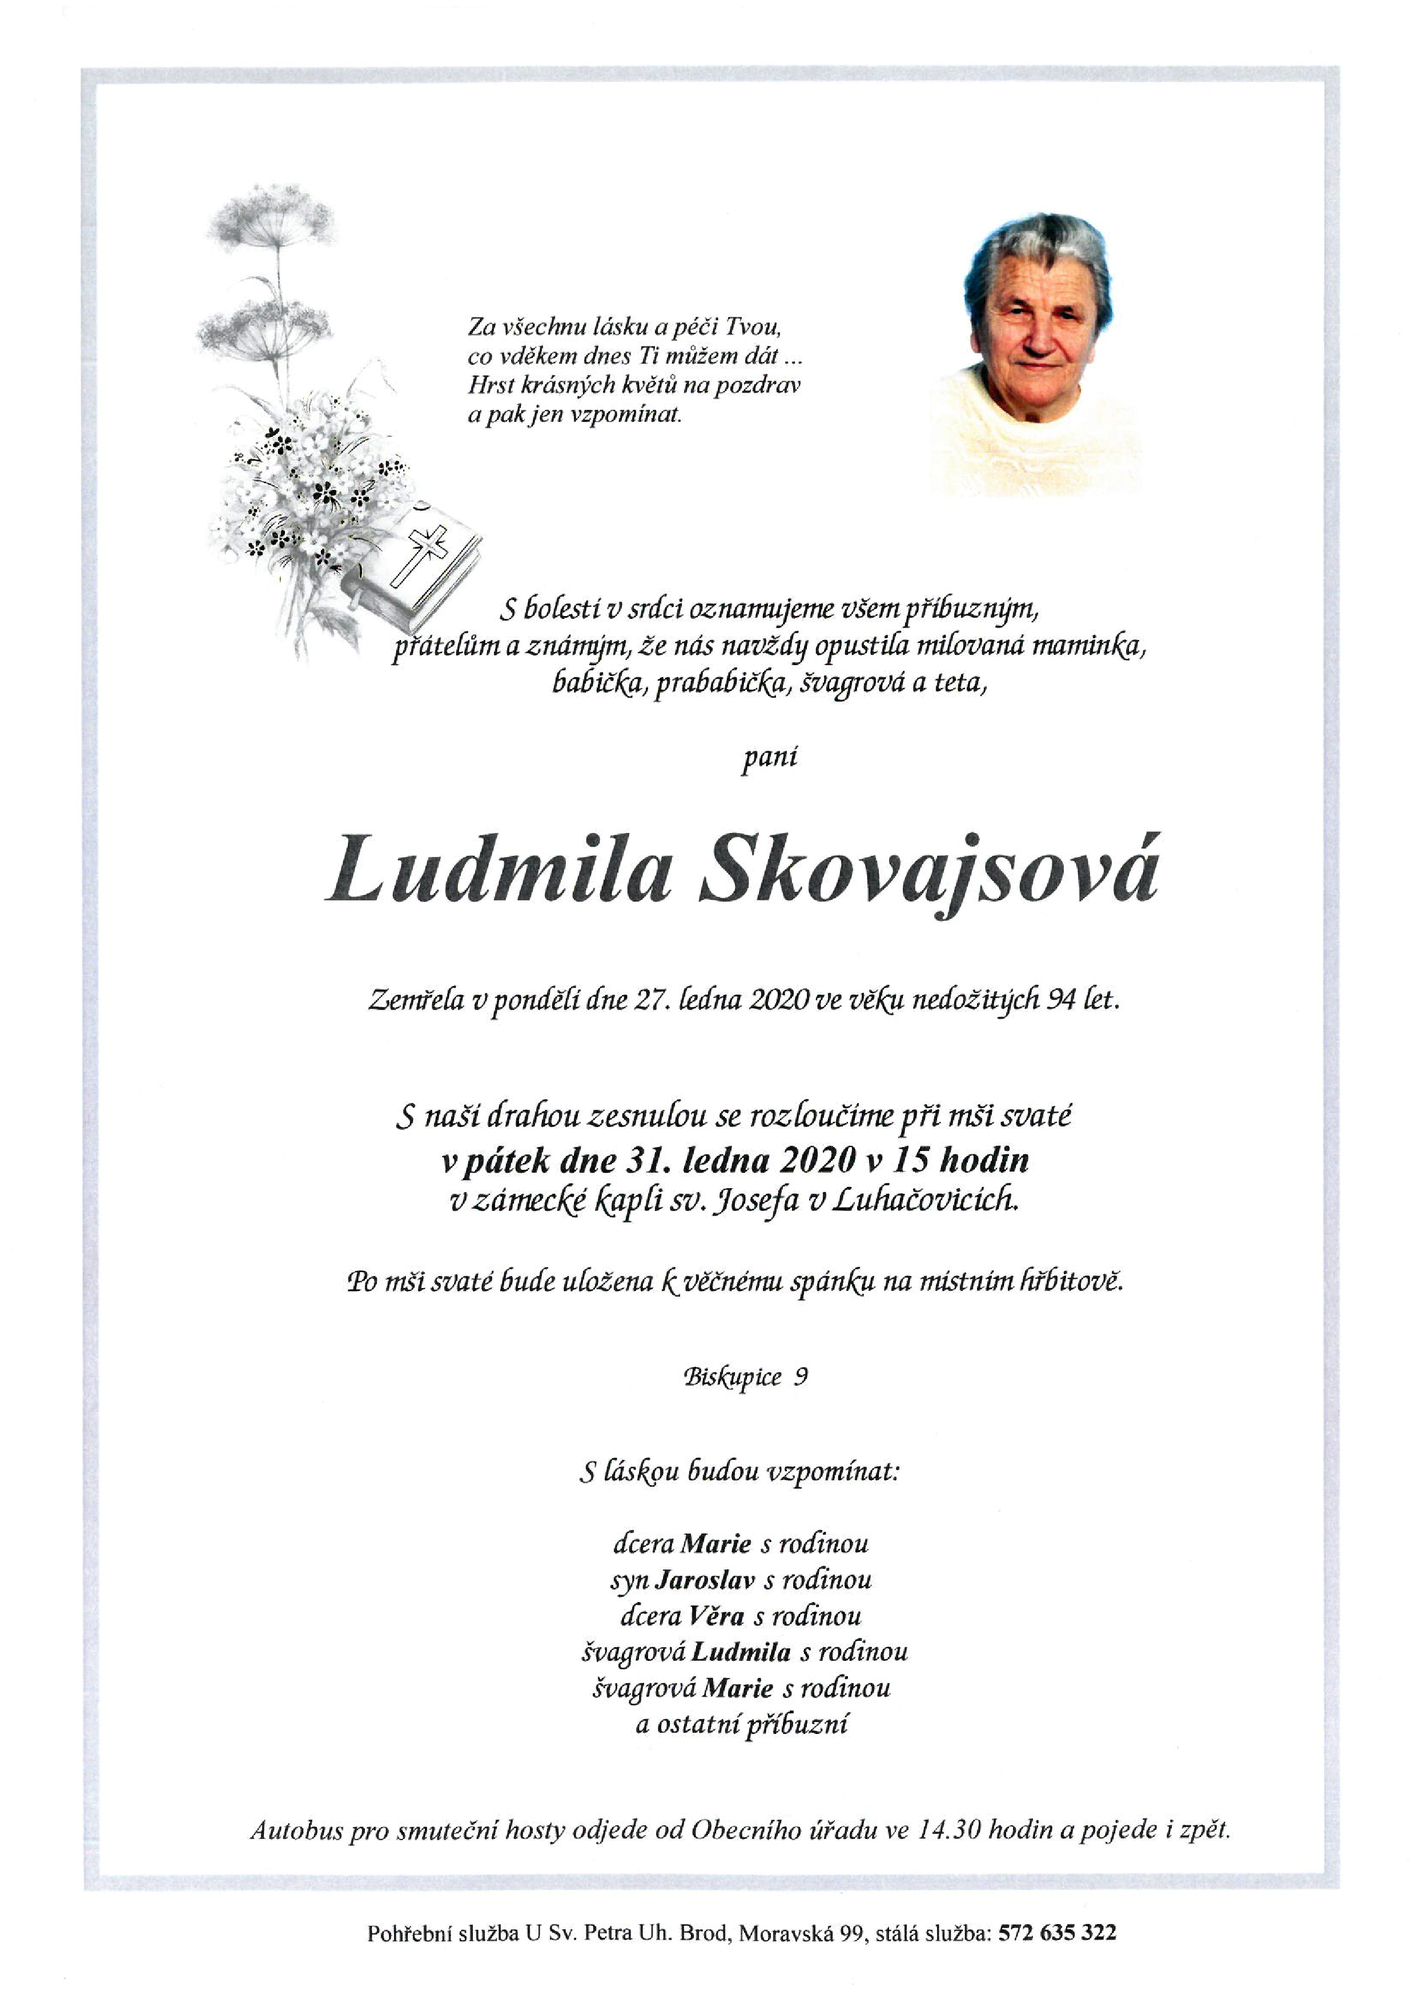 Ludmila Skovajsová